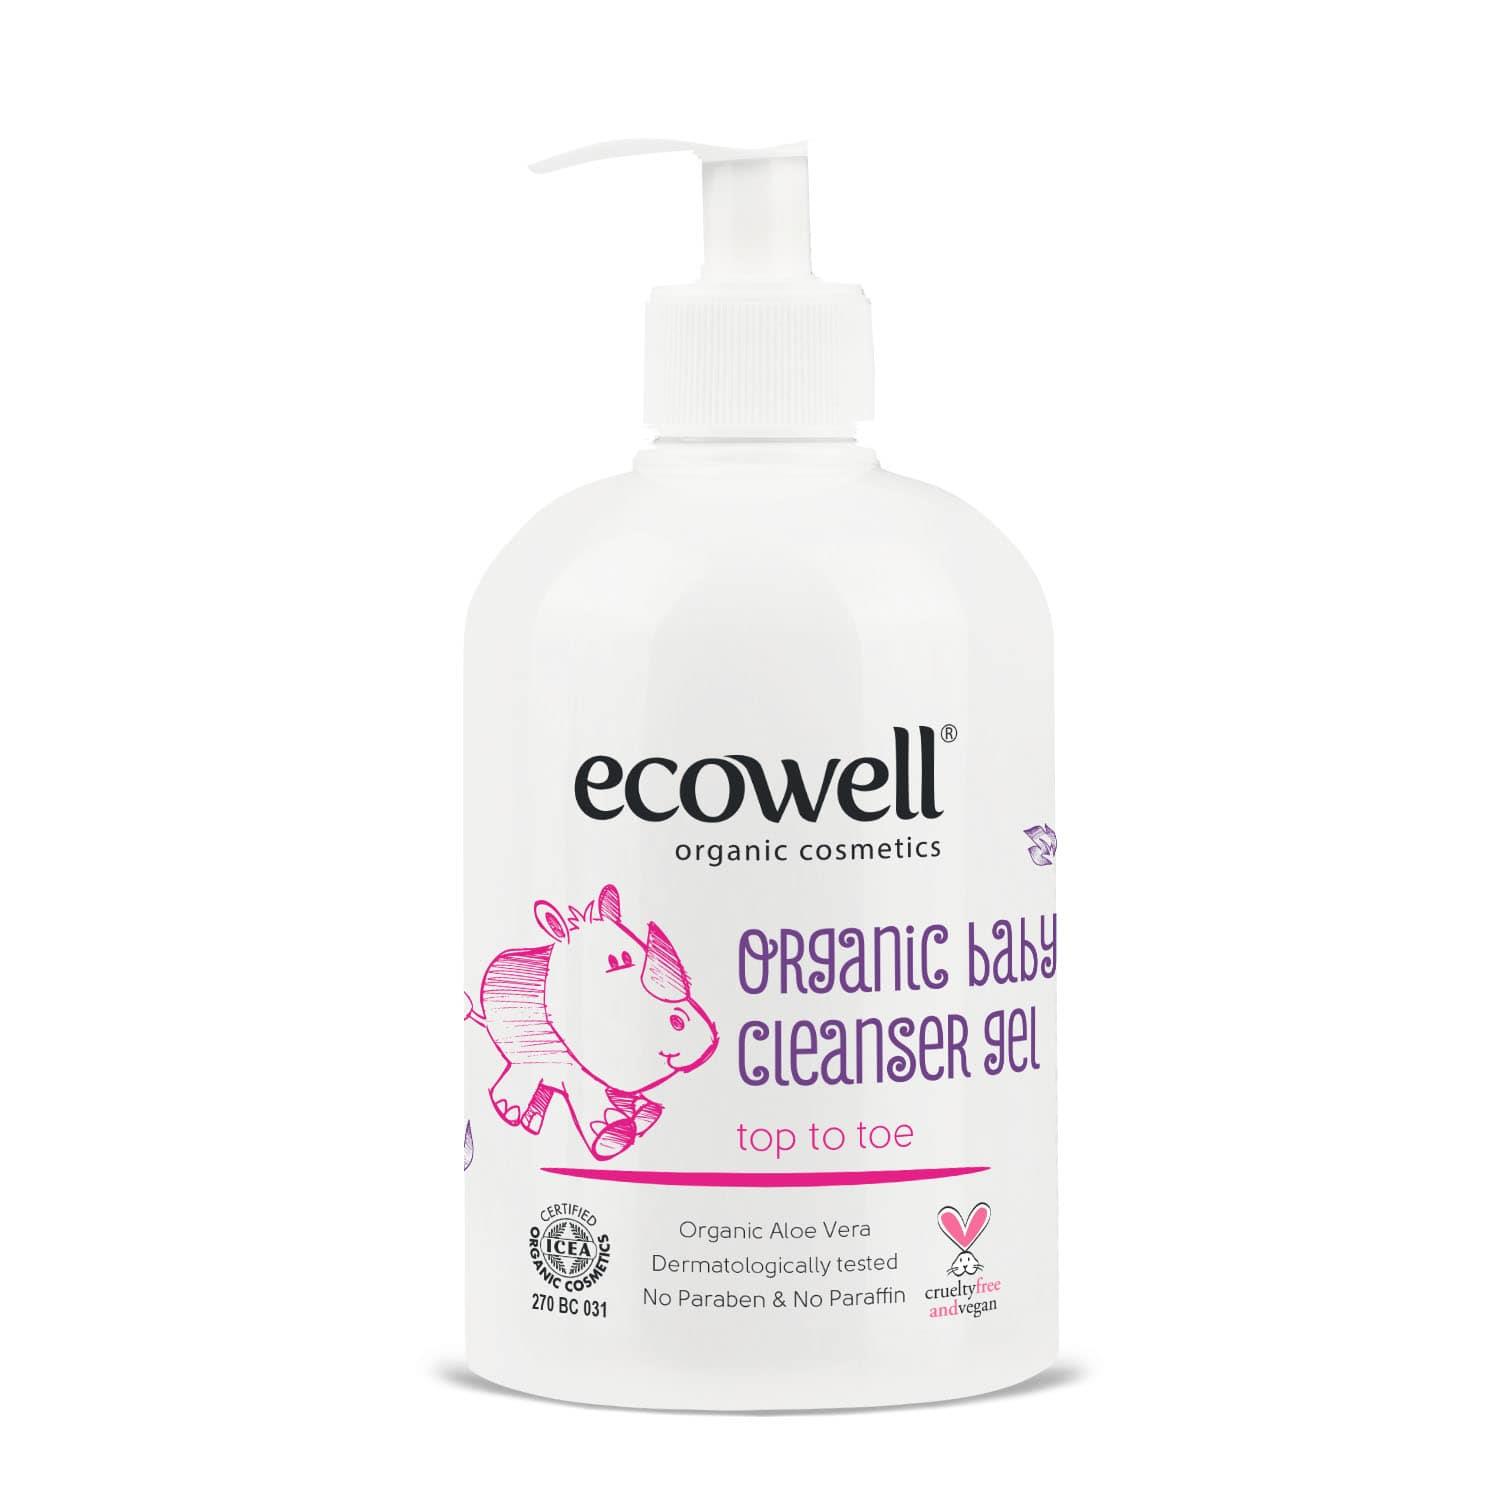 Ecowell Organik Bebek Temizleme Jeli 500 ml